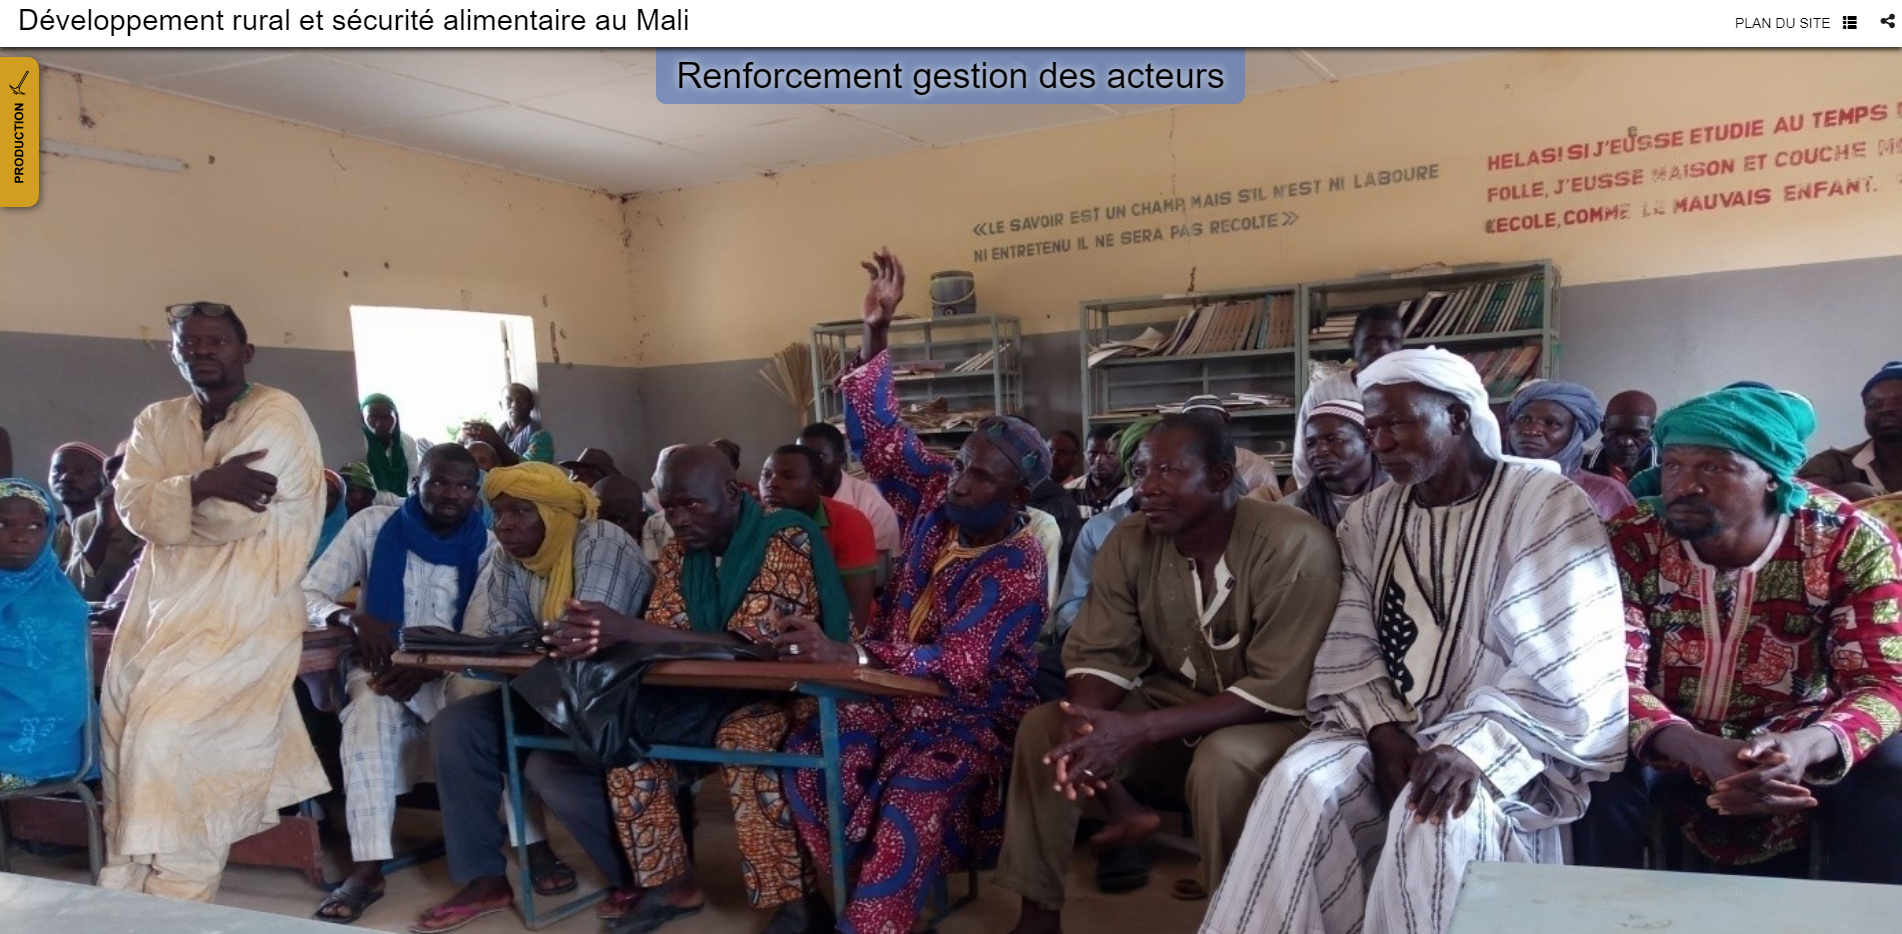 Lux Development implementa in Mali un Programma di Cooperazione per contribuire alla riduzione della povertà e alla promozione della sicurezza alimentare